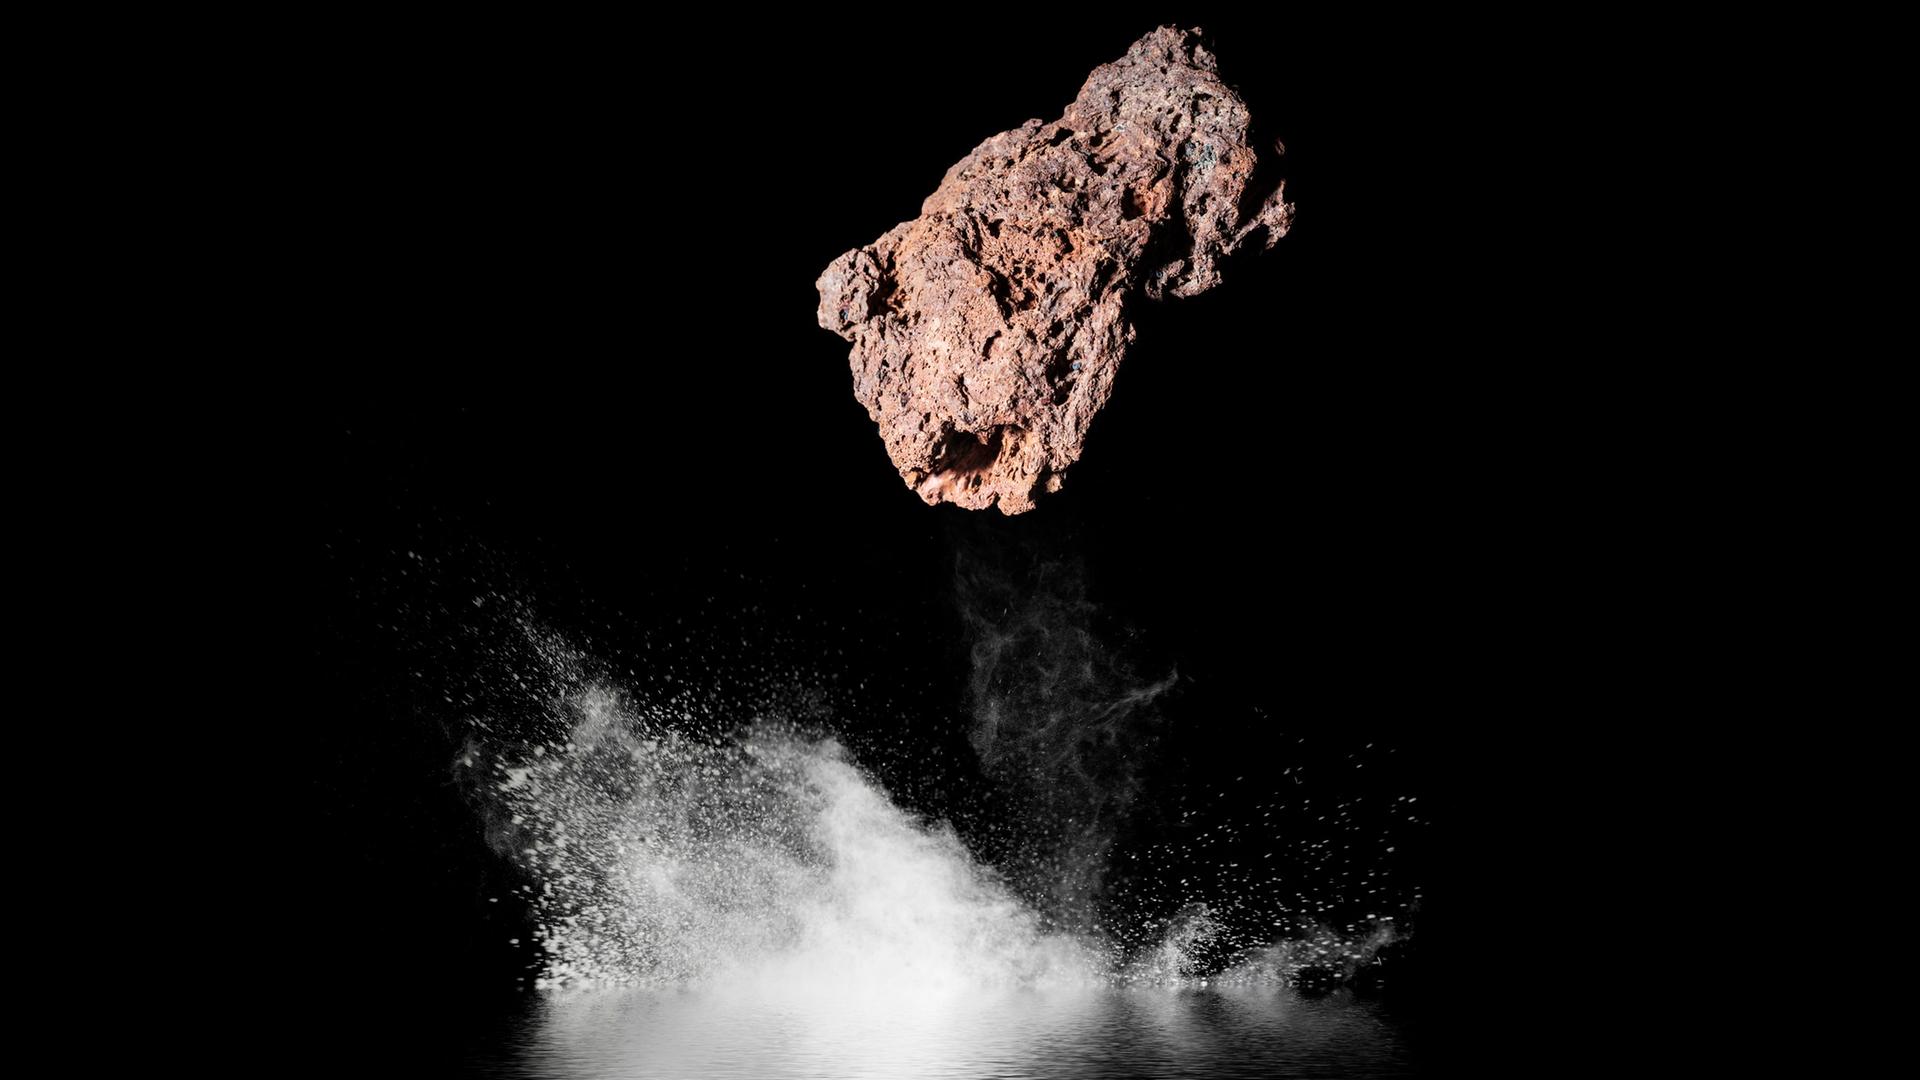 Ein Steinmeteorit aus dem Weltall, er fällt in schwarzes Wasser bei Nacht.